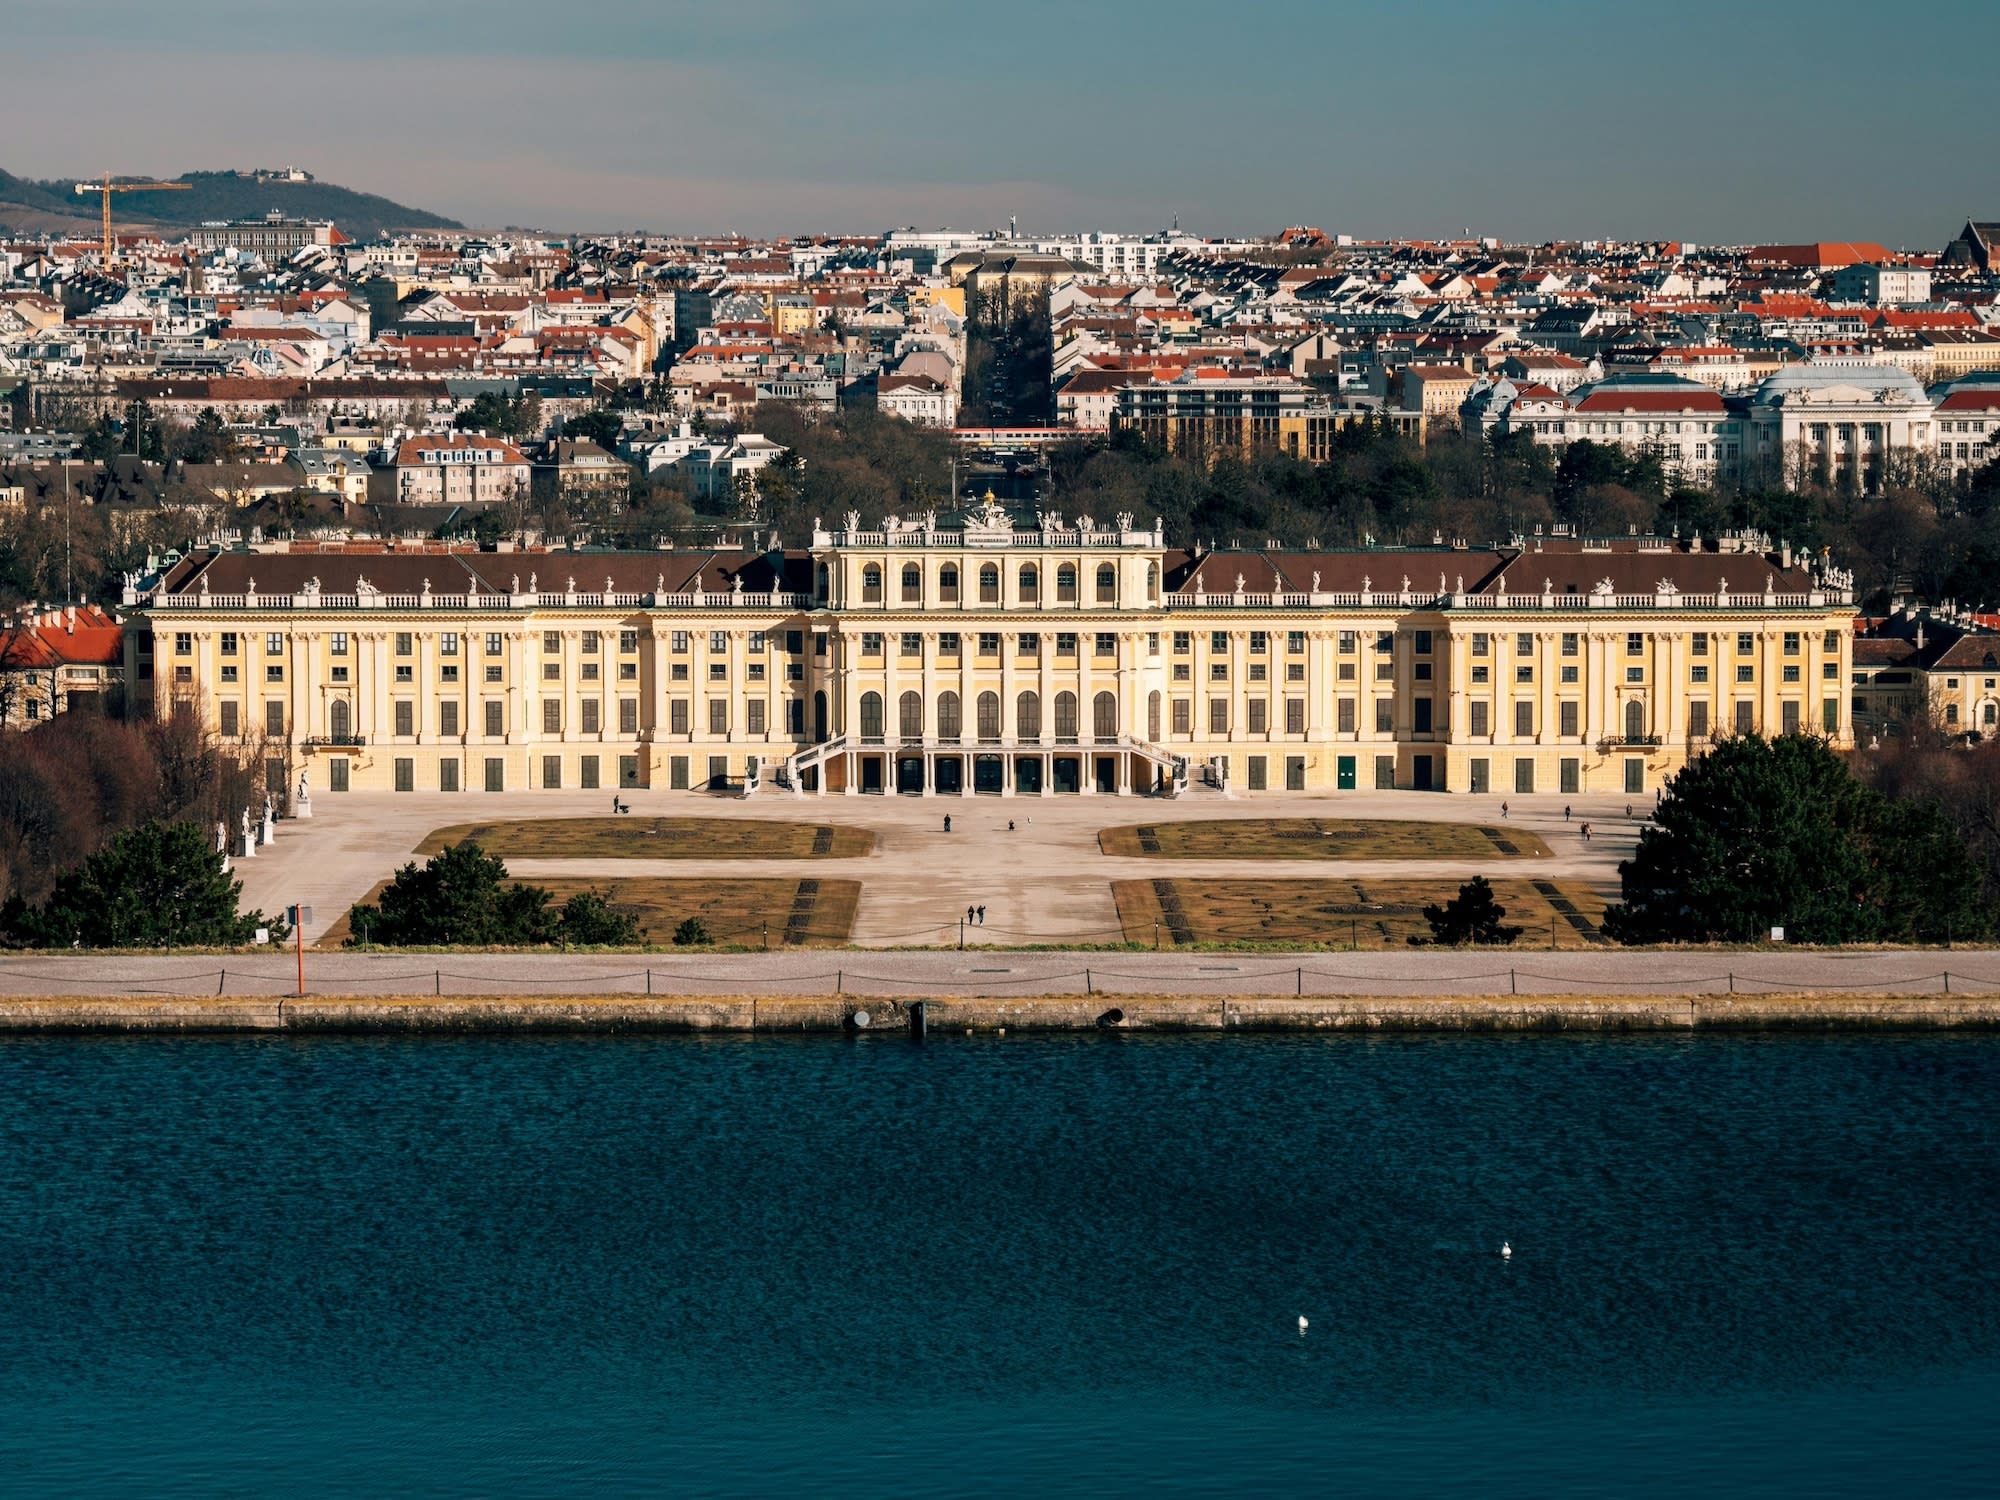 Vienna - Schonbrunn palace